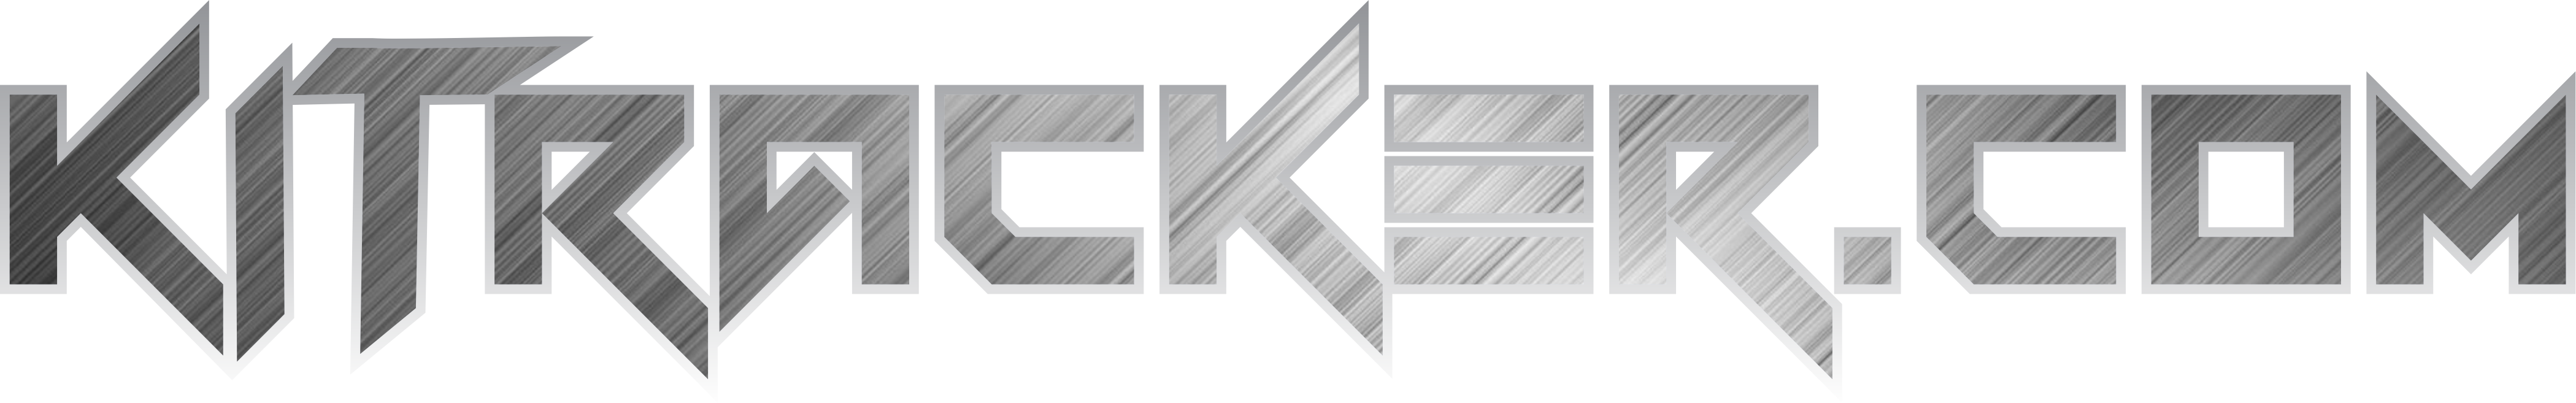 KI Tracker Logo